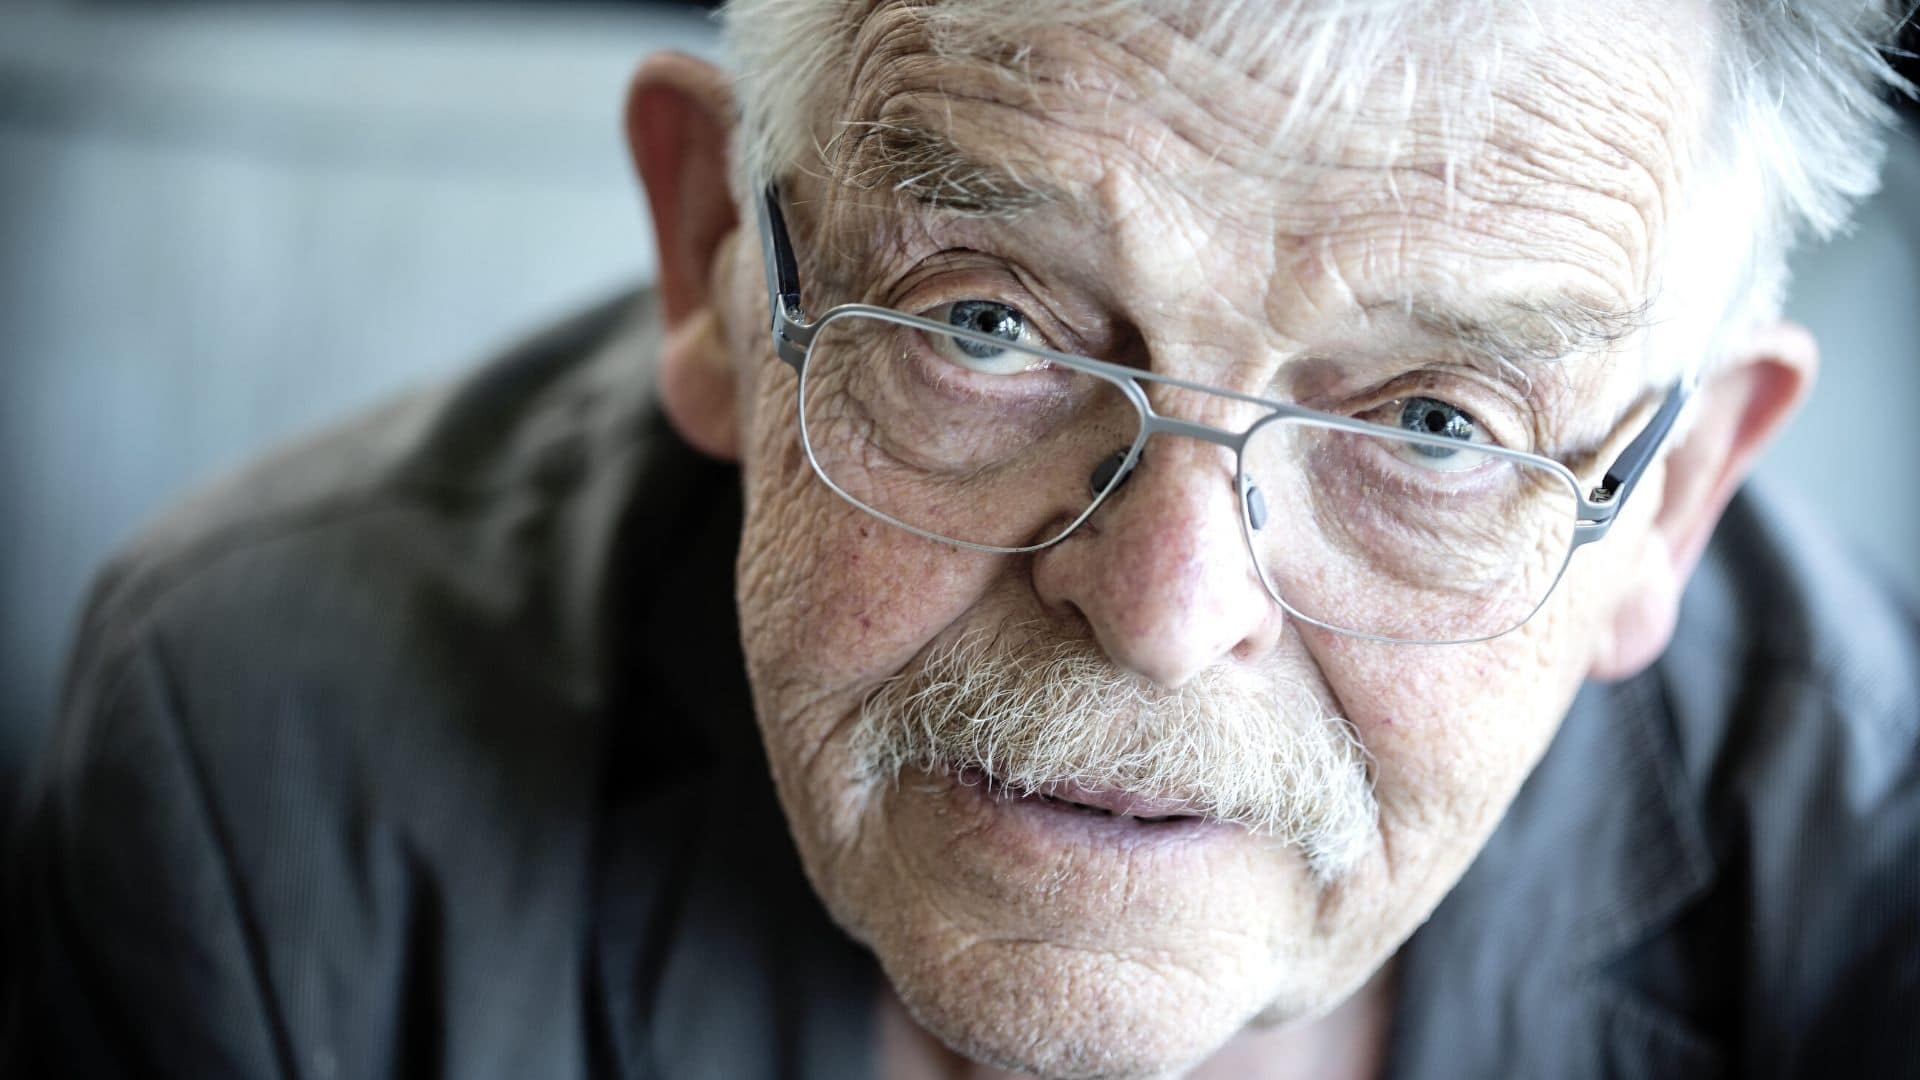 Den litterære sværvægter Peter Poulsen fylder 80 år